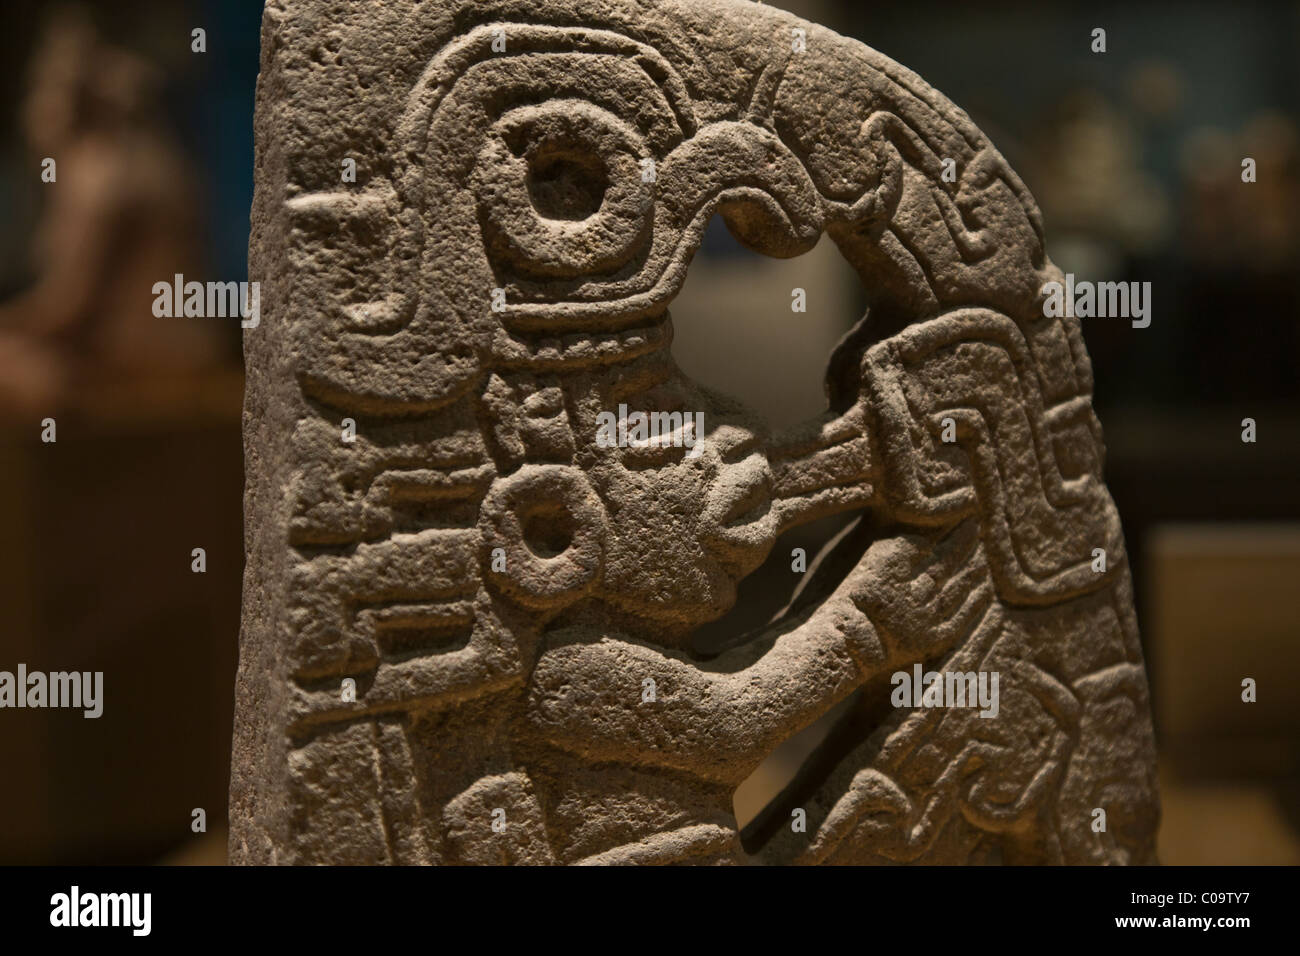 Cultura mesoamericana fotografías e imágenes de alta resolución - Alamy